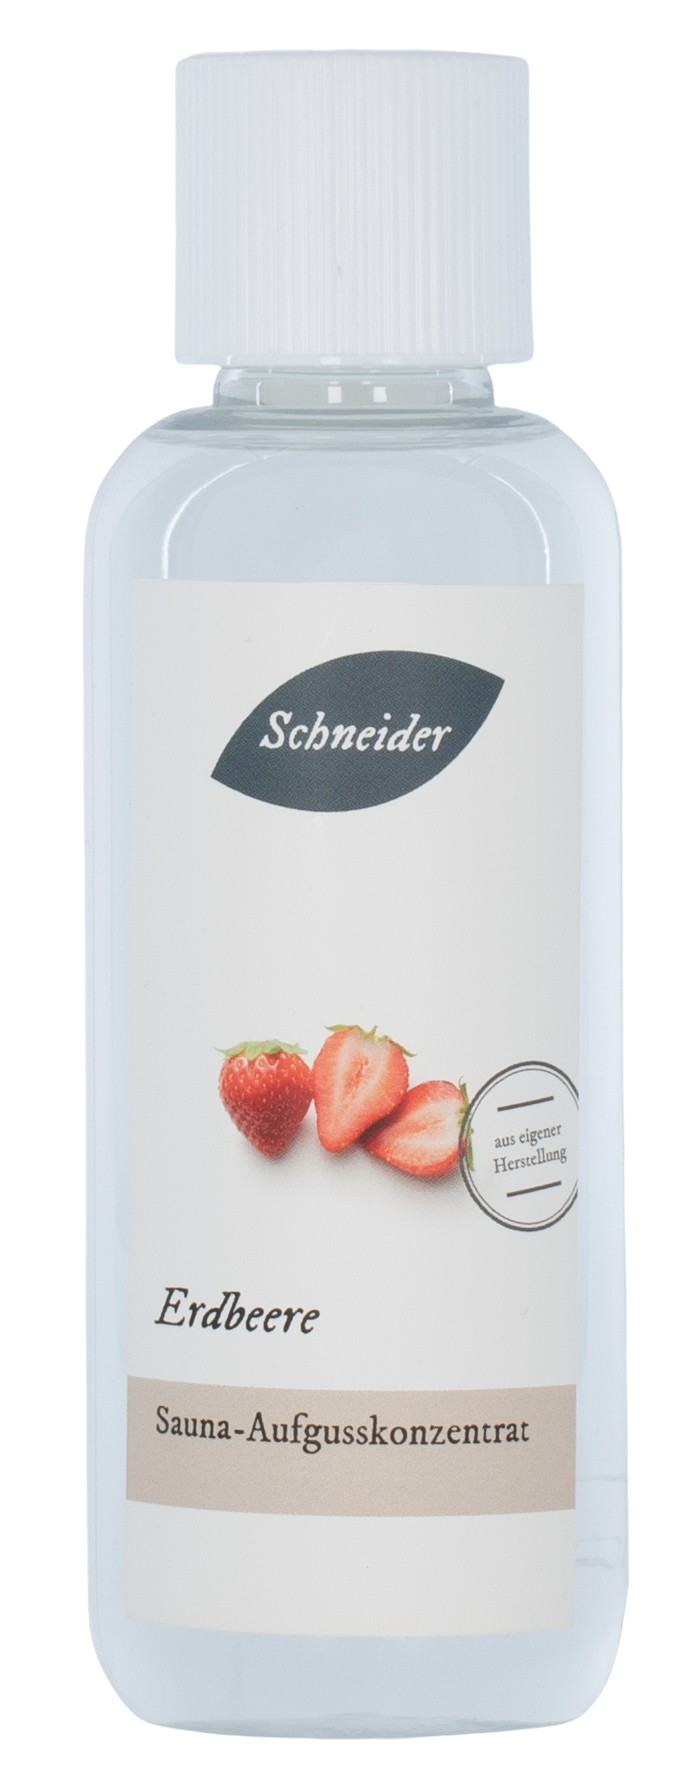 Saunaaufguss Erdbeere (Aufgusskonzentrat) 250 ml